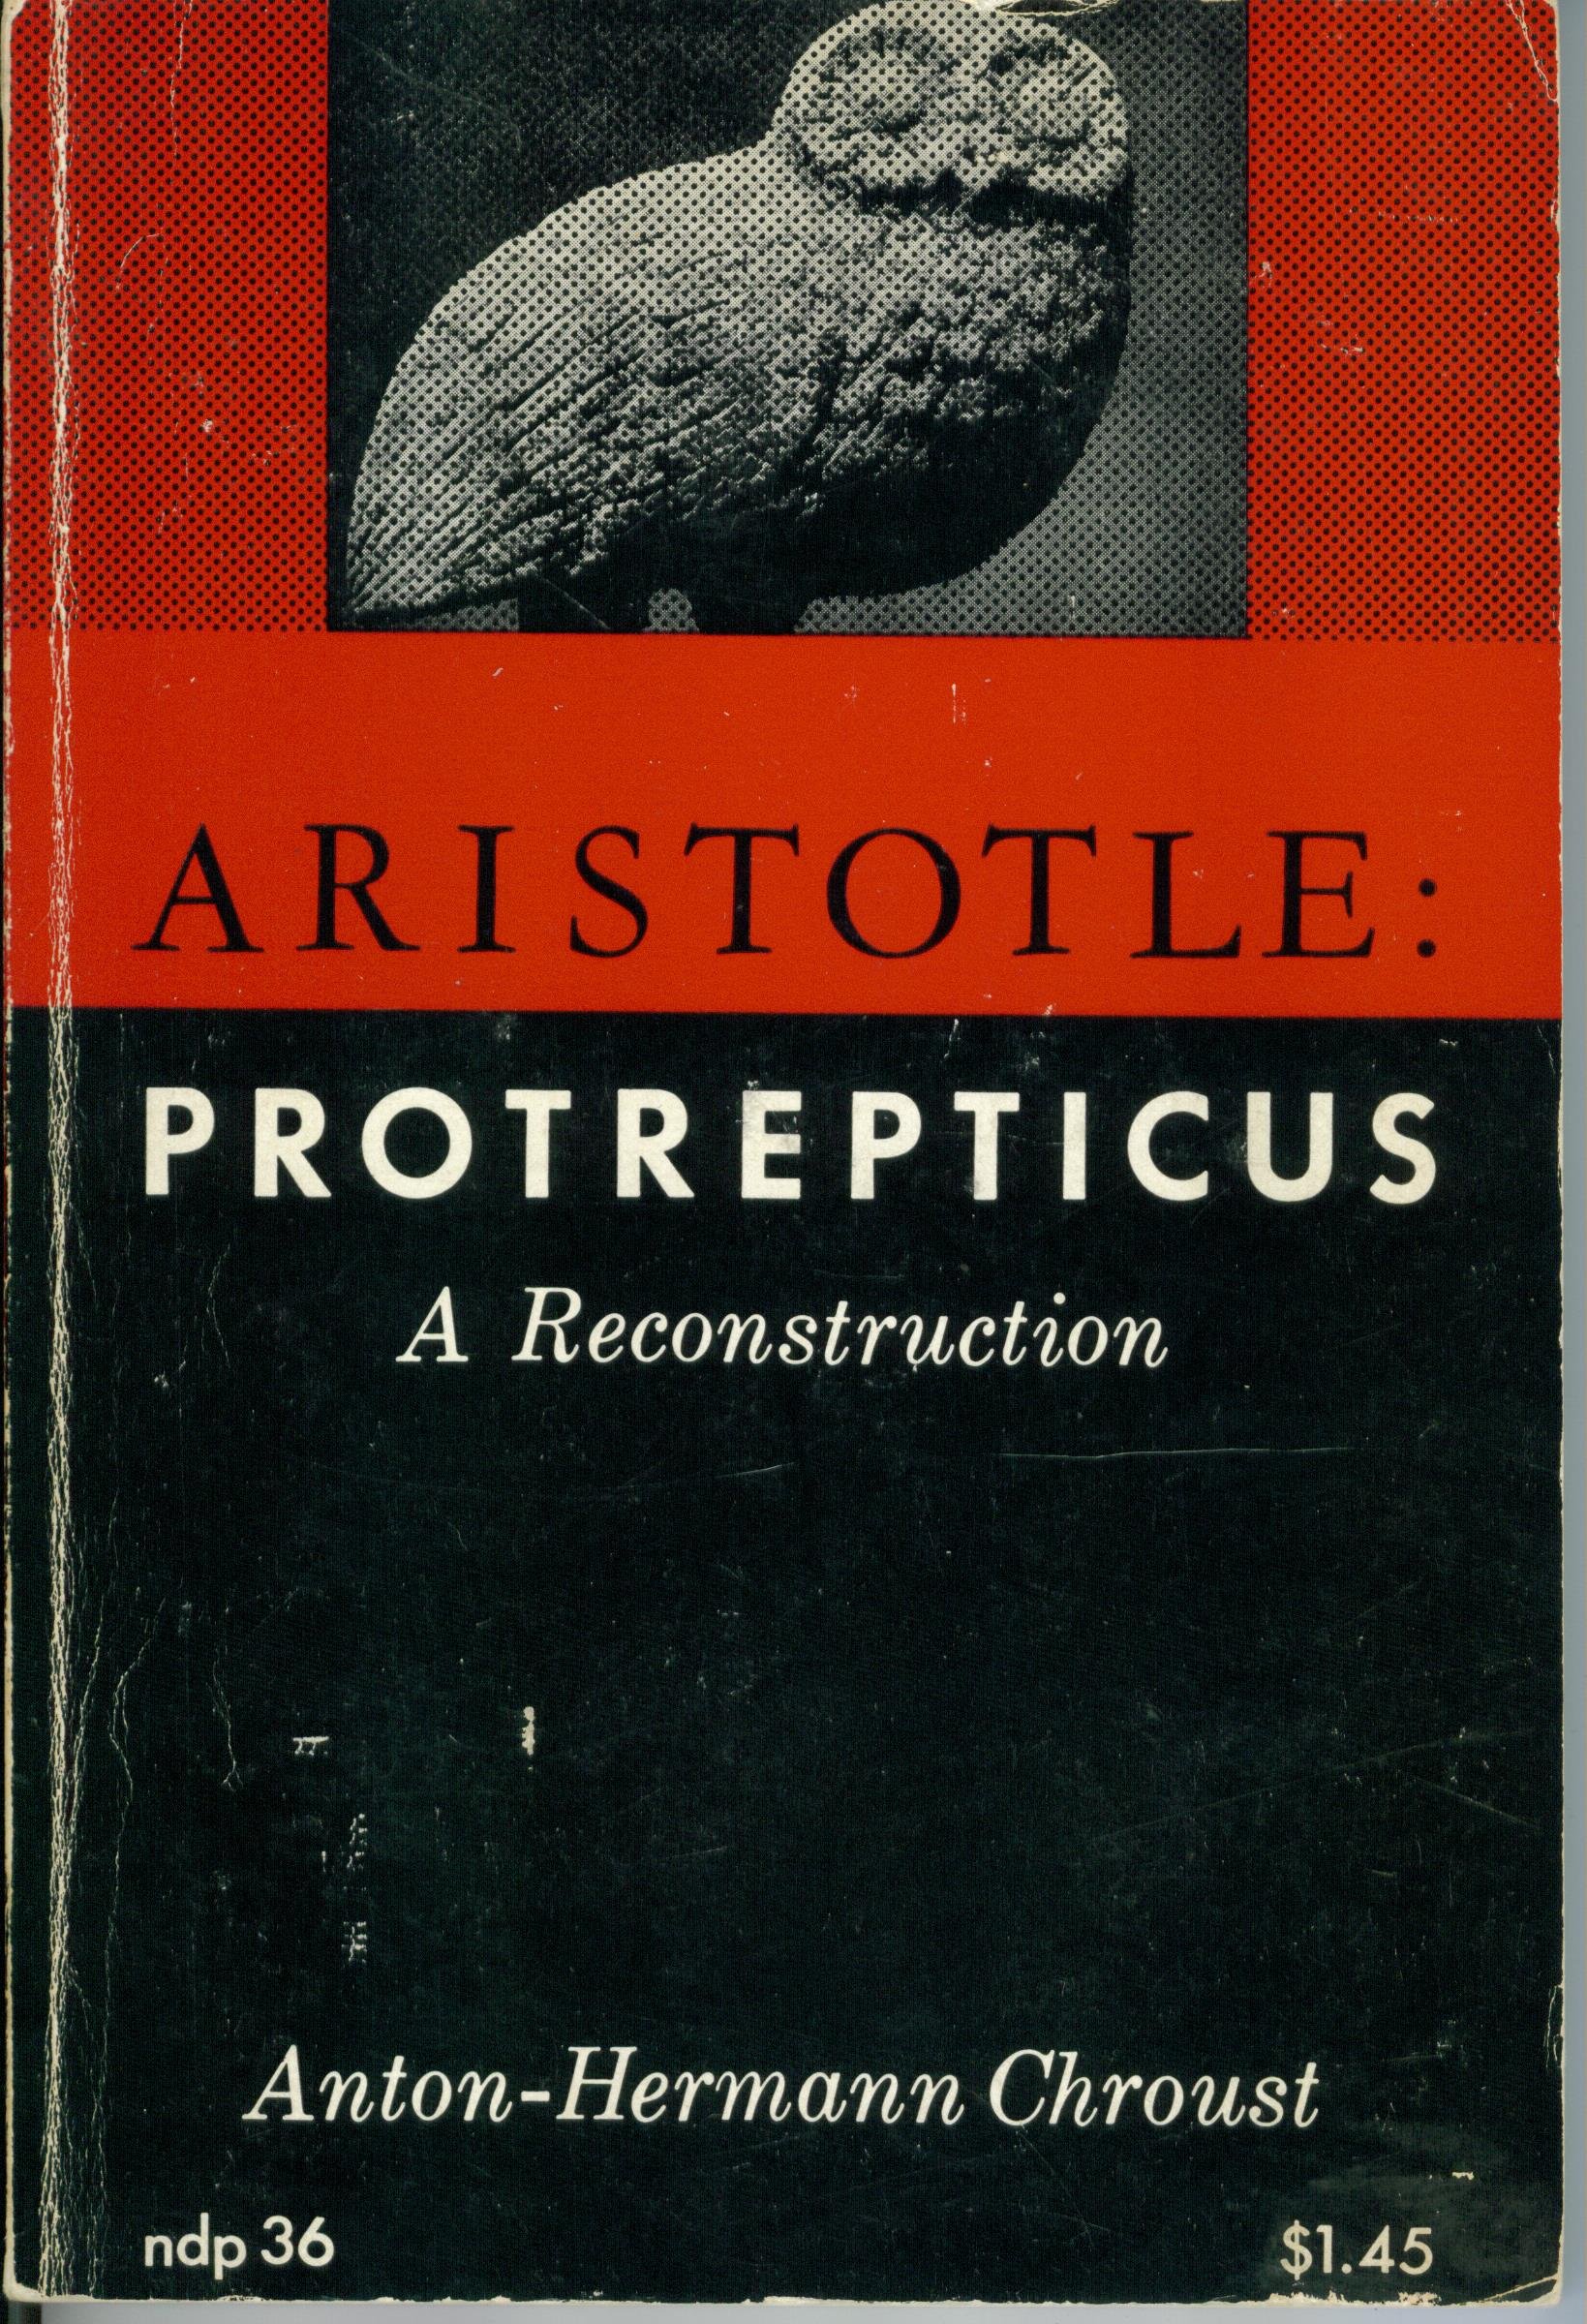 Protrepticus